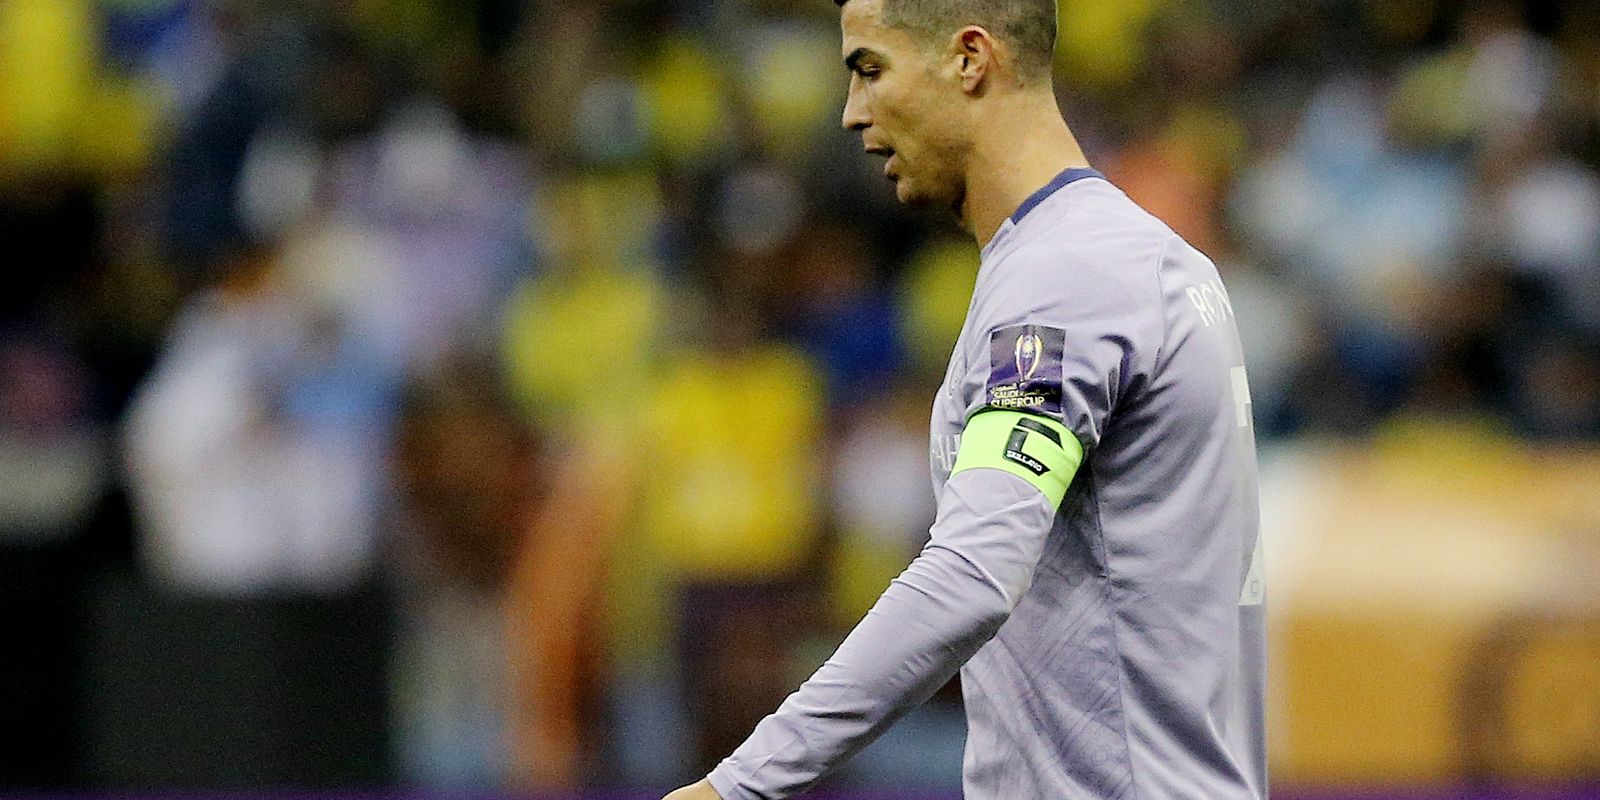 Foto: Cristiano Ronaldo joga hoje no time da Arábia Saudita Al